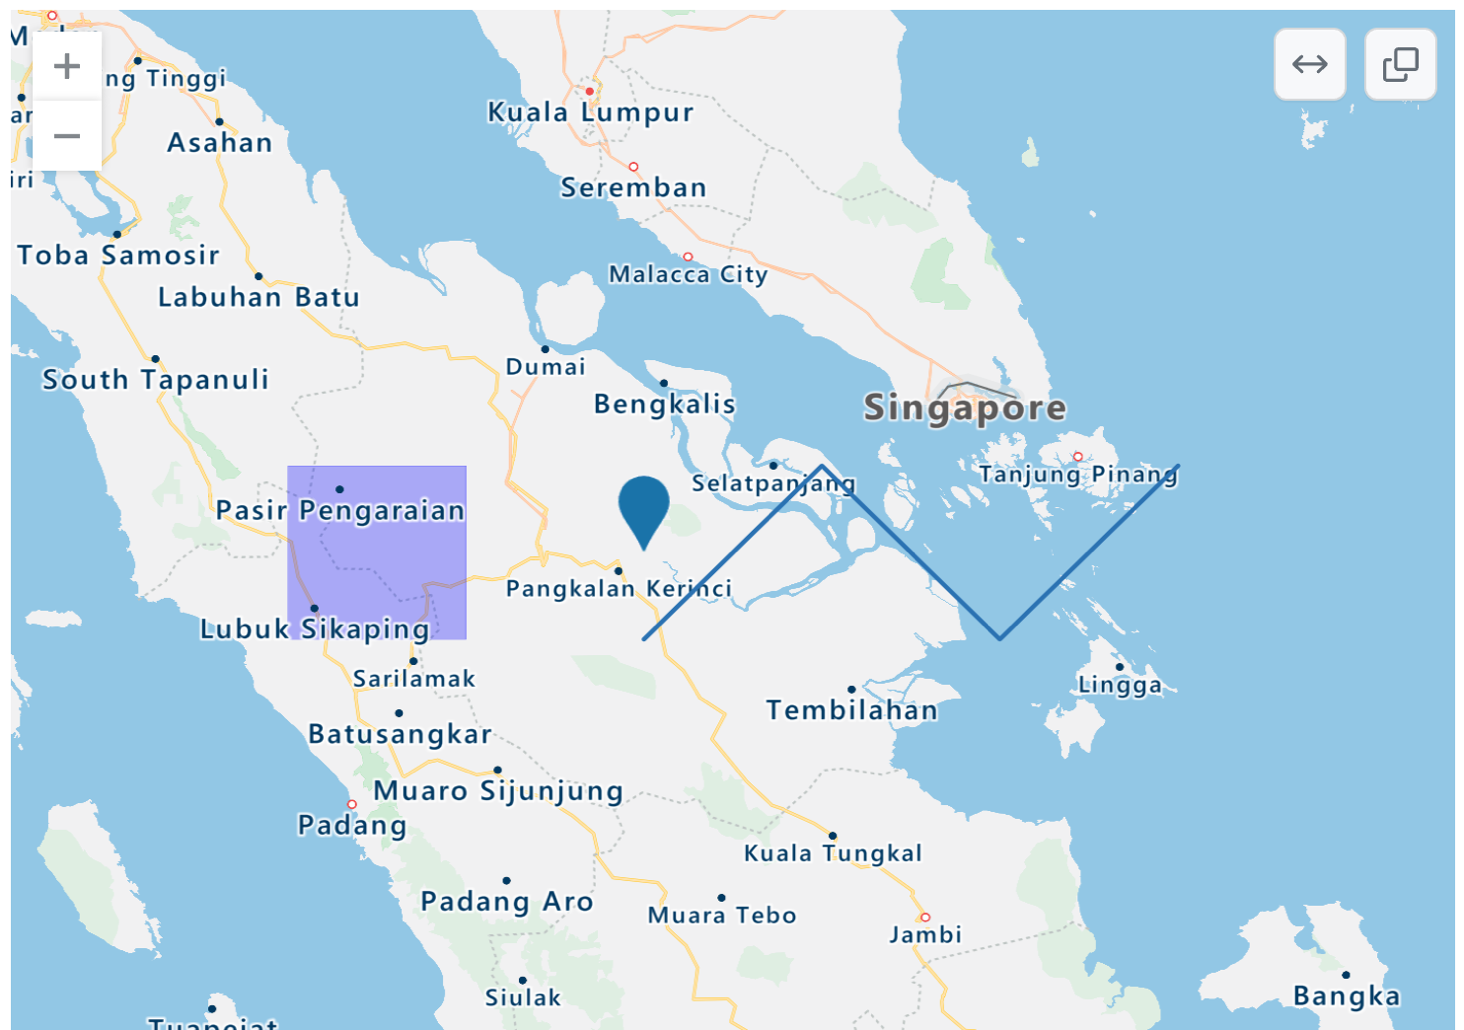 Снимок экрана: отрисовка карты TopoJSON западной Индонезии и части Сингапура и Малайзии с синей точкой, фиолетовым прямоугольным наложением и синим зигзагом линий.